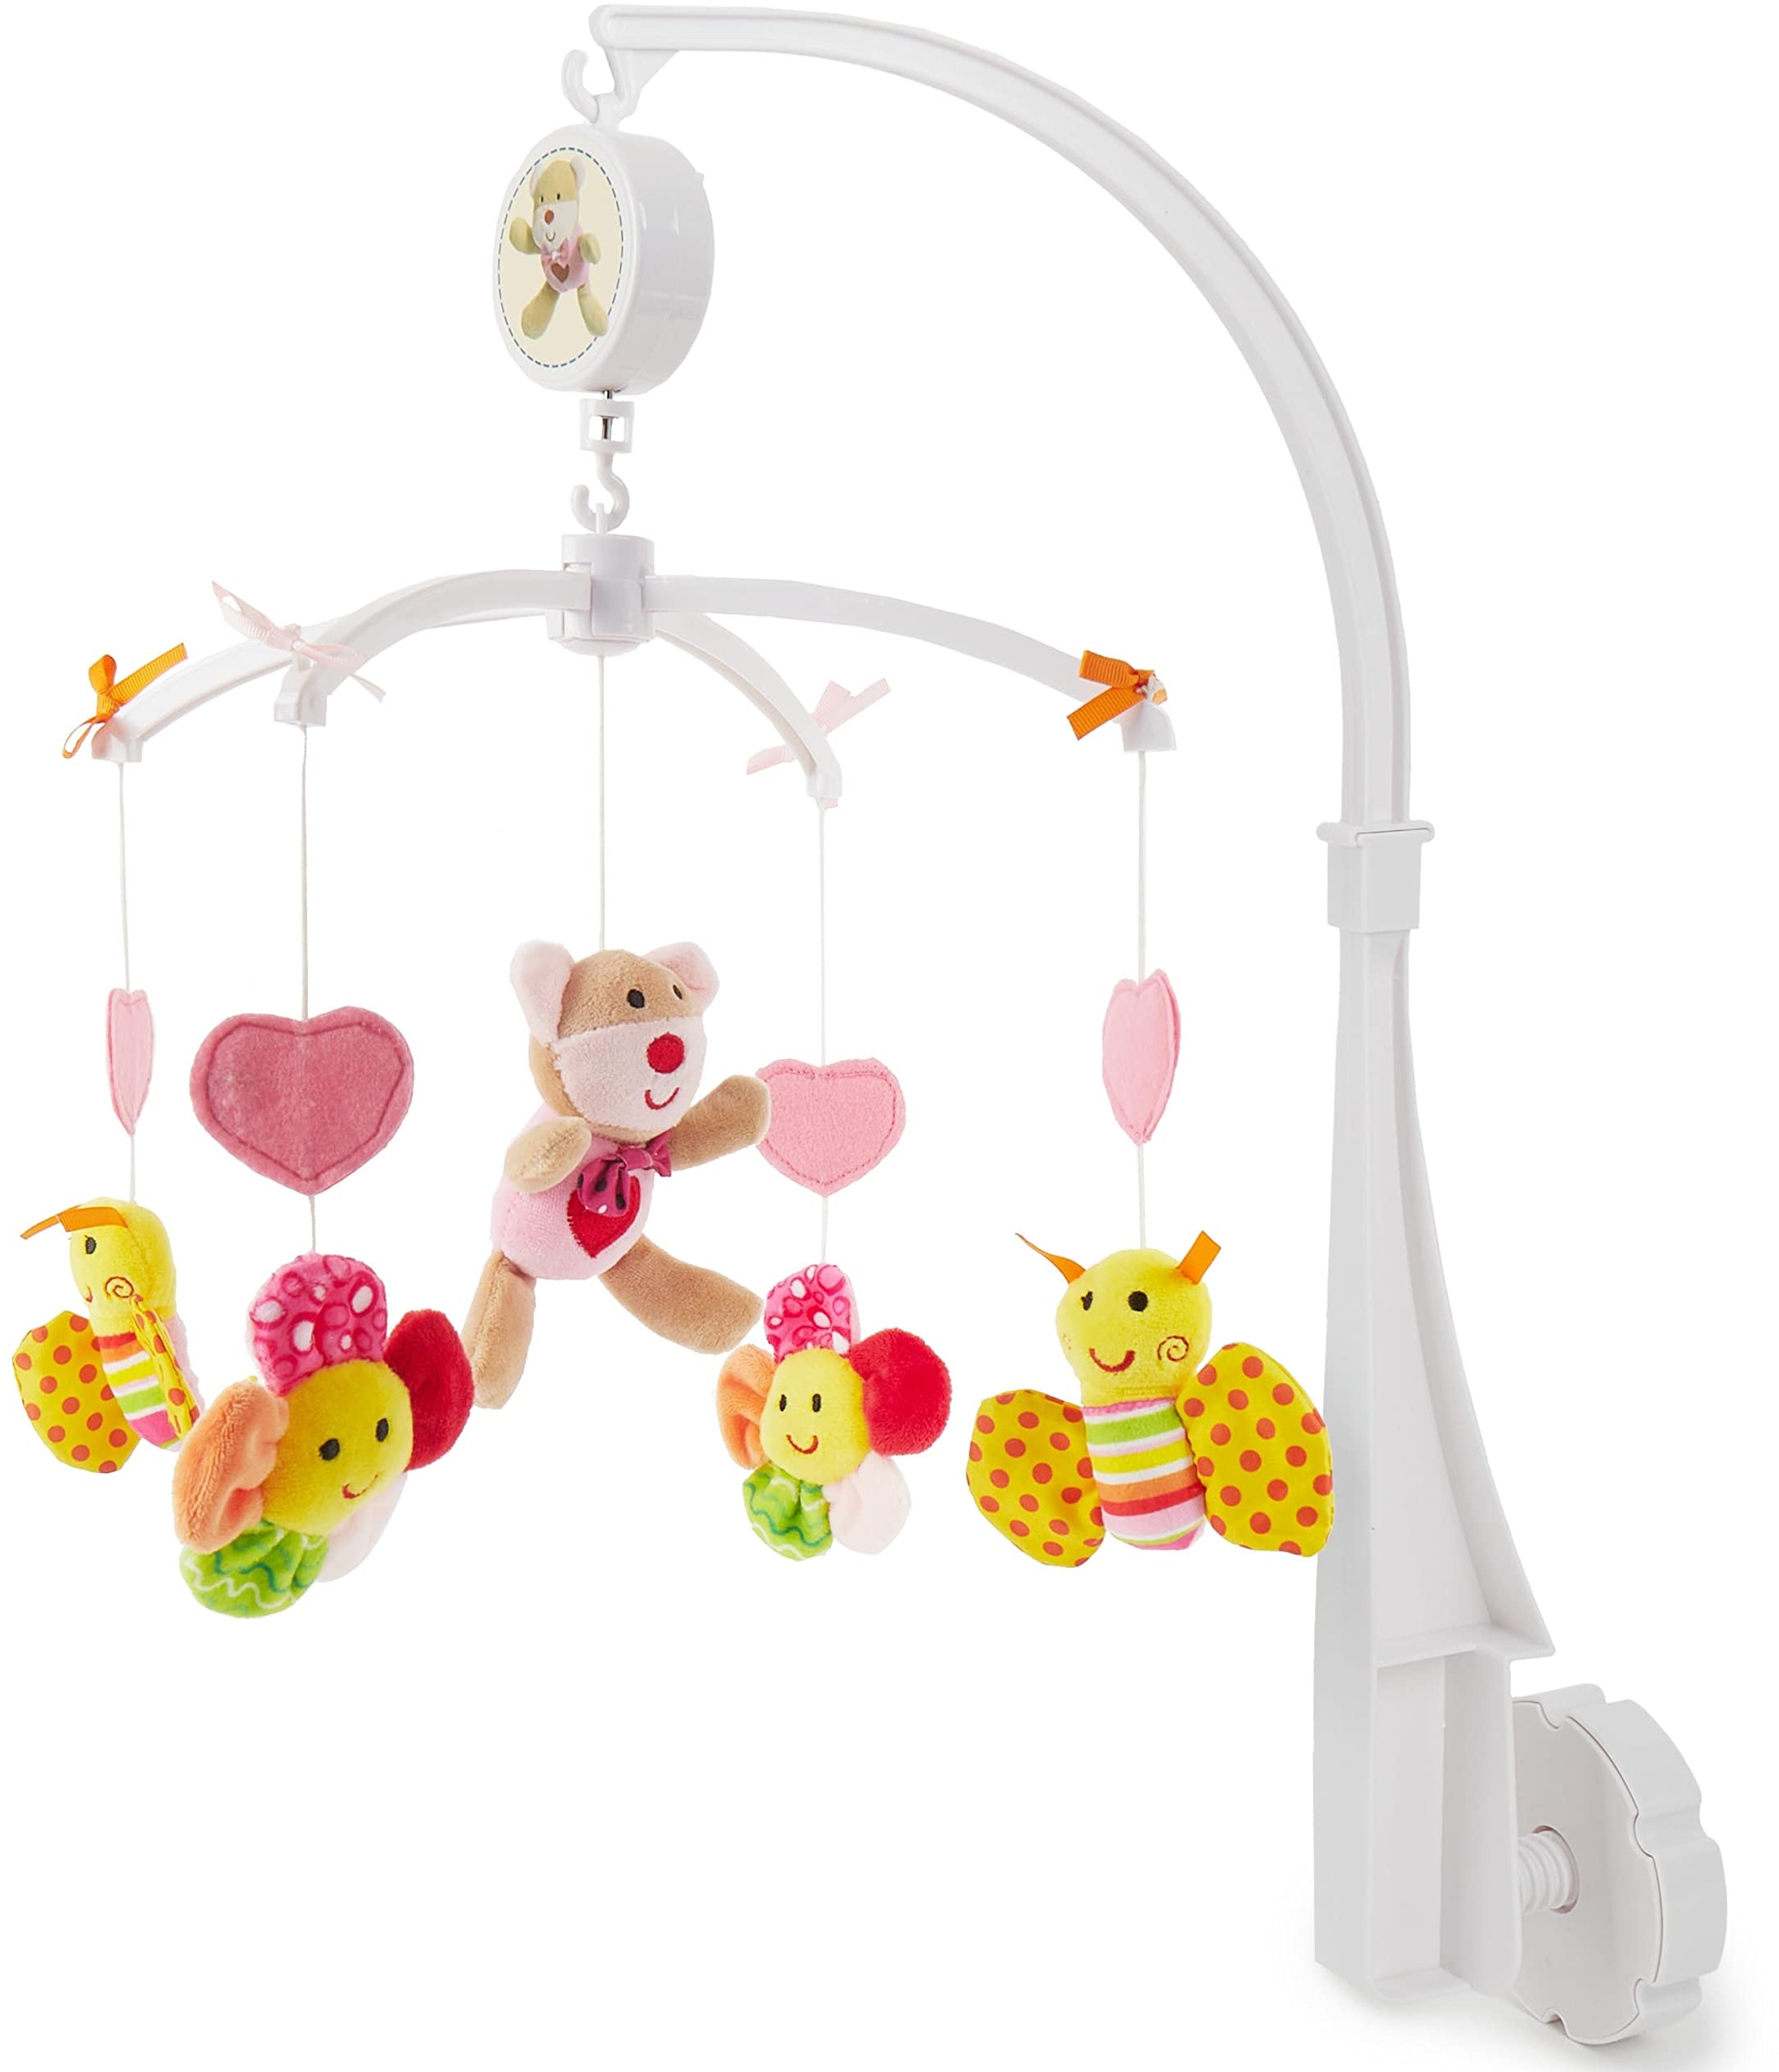 Bieco Musik Mobile Baby | Design Bärchen Pink | Ø 31 cm, Höhe 62 cm | Baby Einschlafhilfe | Spieluhr Baby | Babybett Spielzeug | Mobile Baby Musik | Baby Toys 0-6 Months | Spielt die Melodie LaLeLu